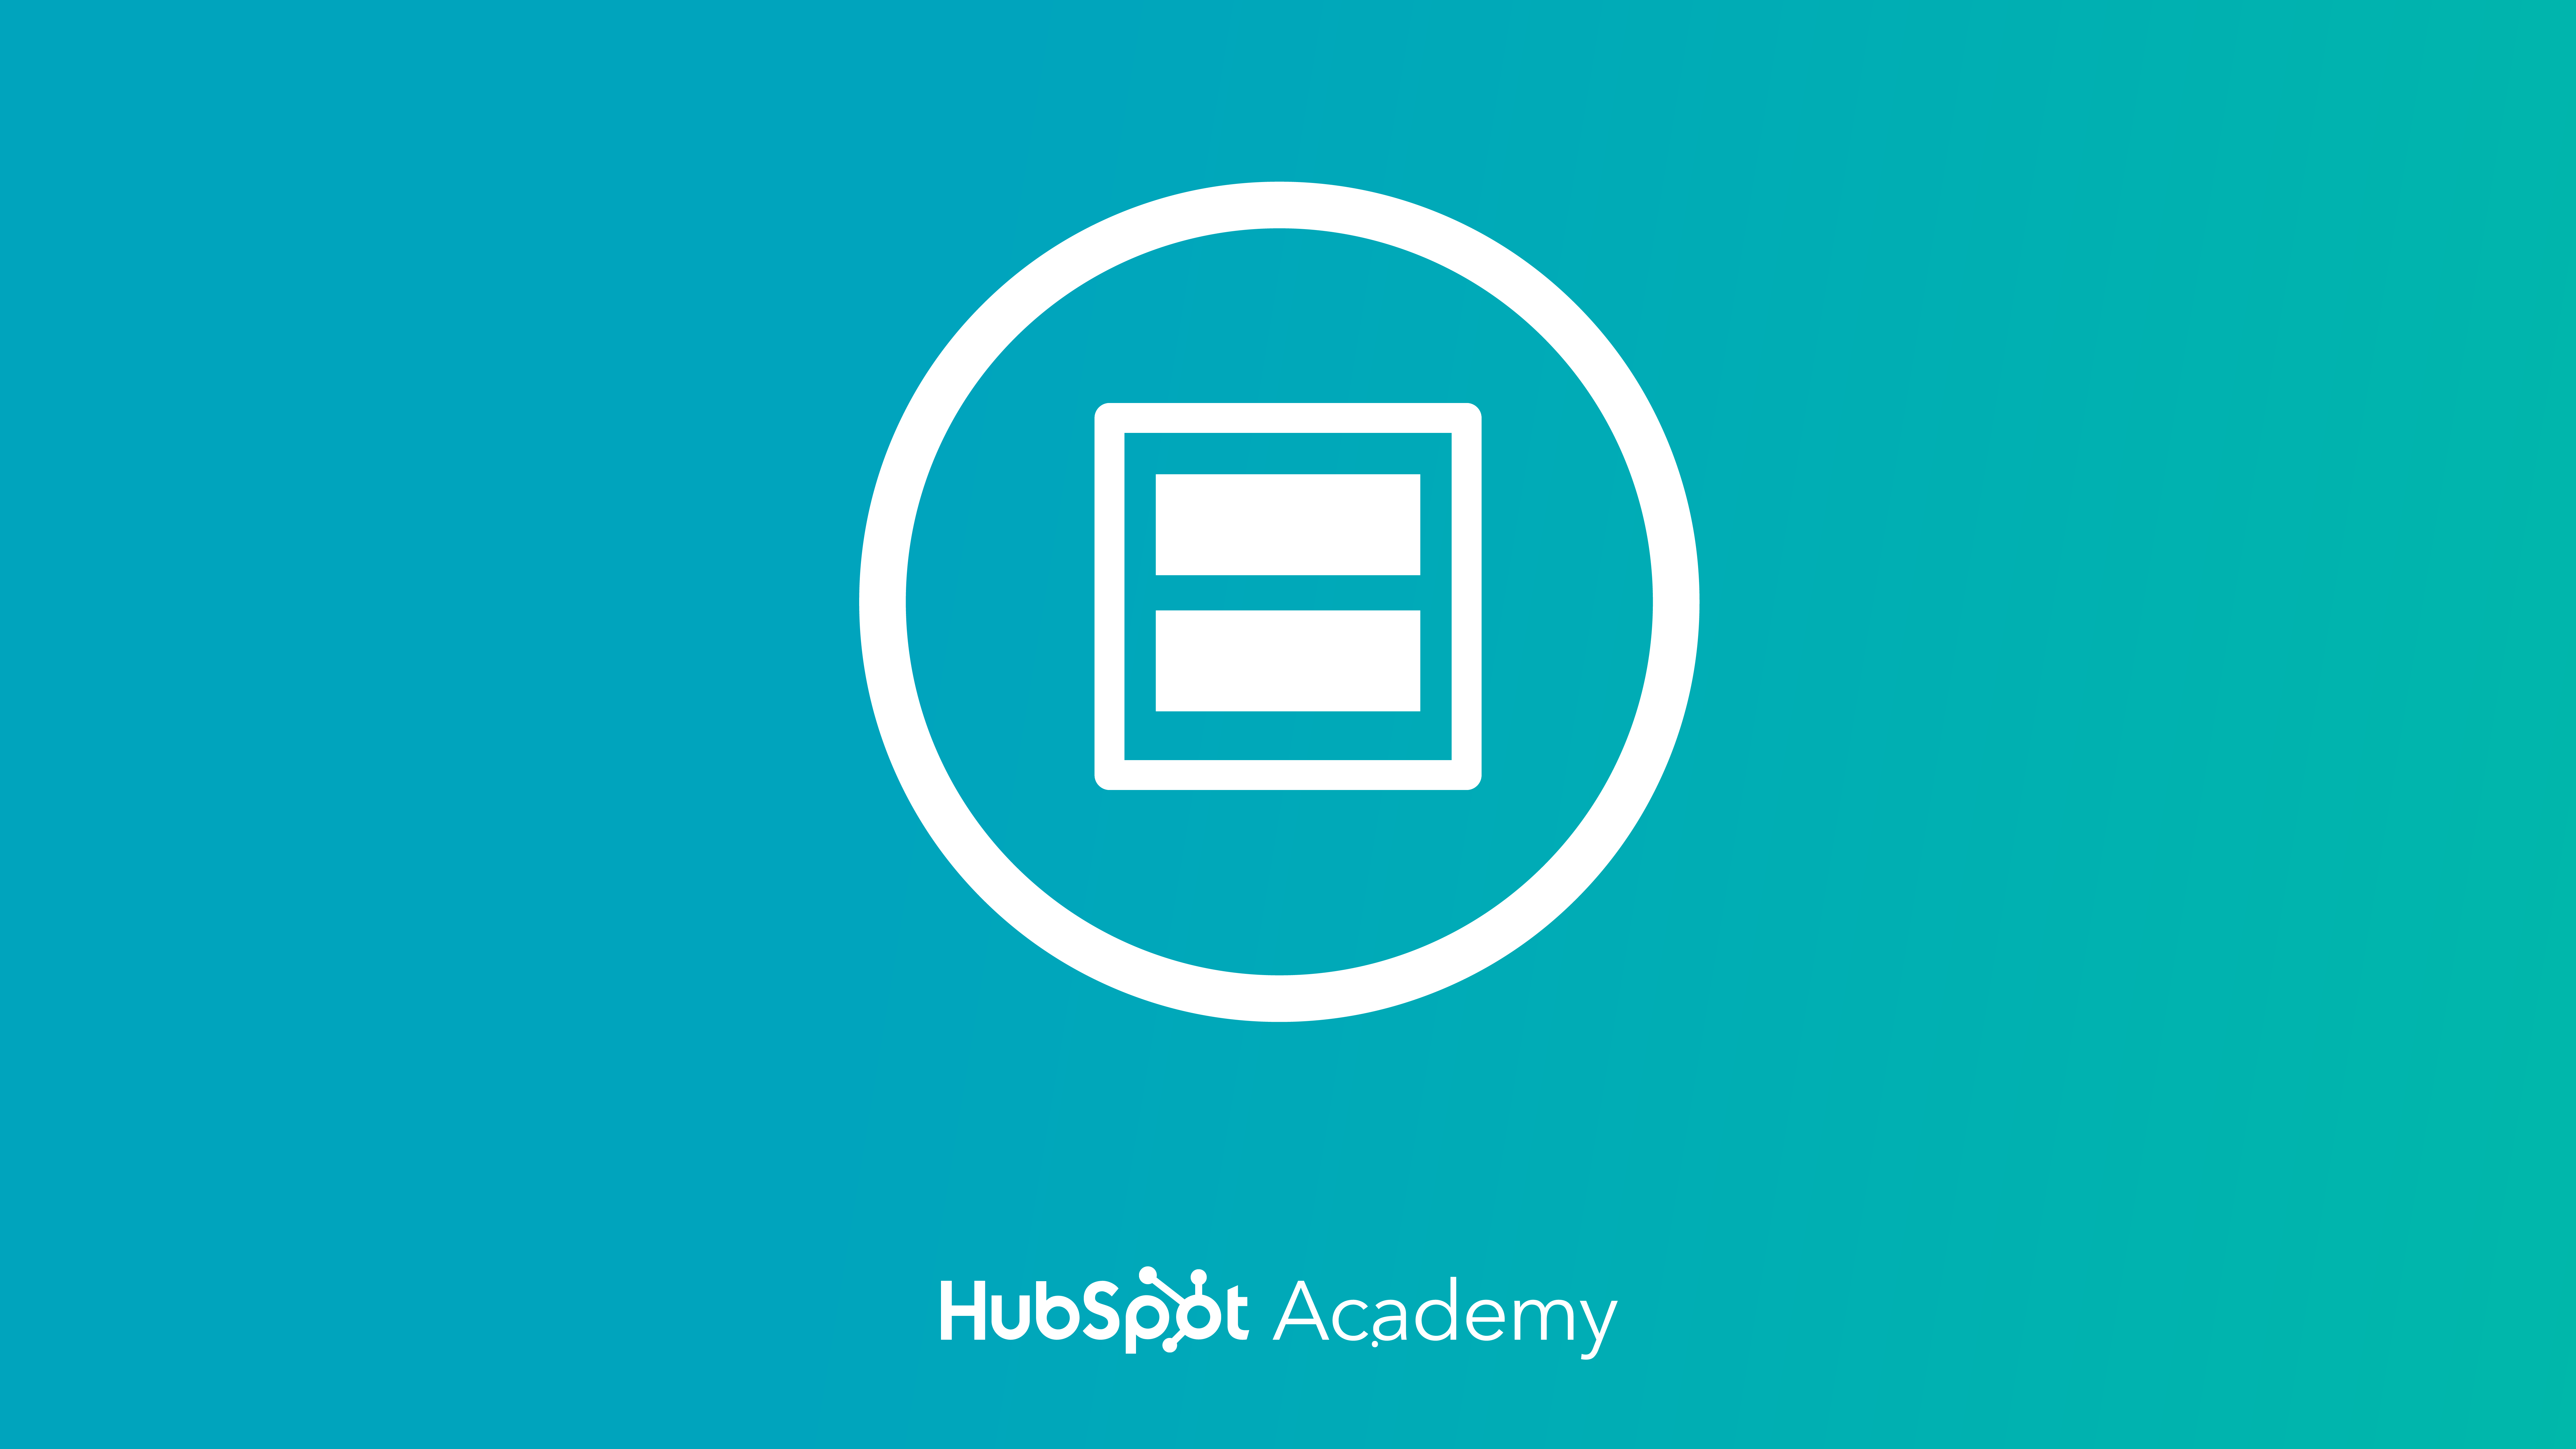 HubSpot Design Certification course by HubSpot Academy